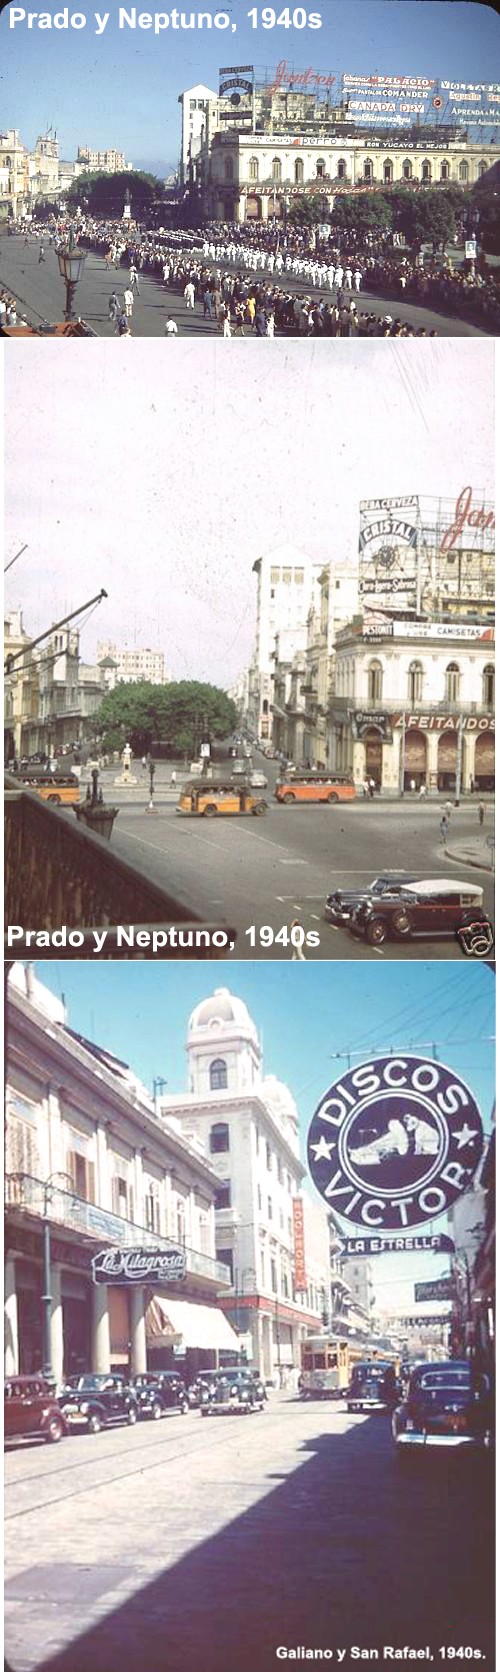 1958 - FOTOS DE CUBA ! SOLAMENTES DE ANTES DEL 1958 !!!! - Página 26 Havana11